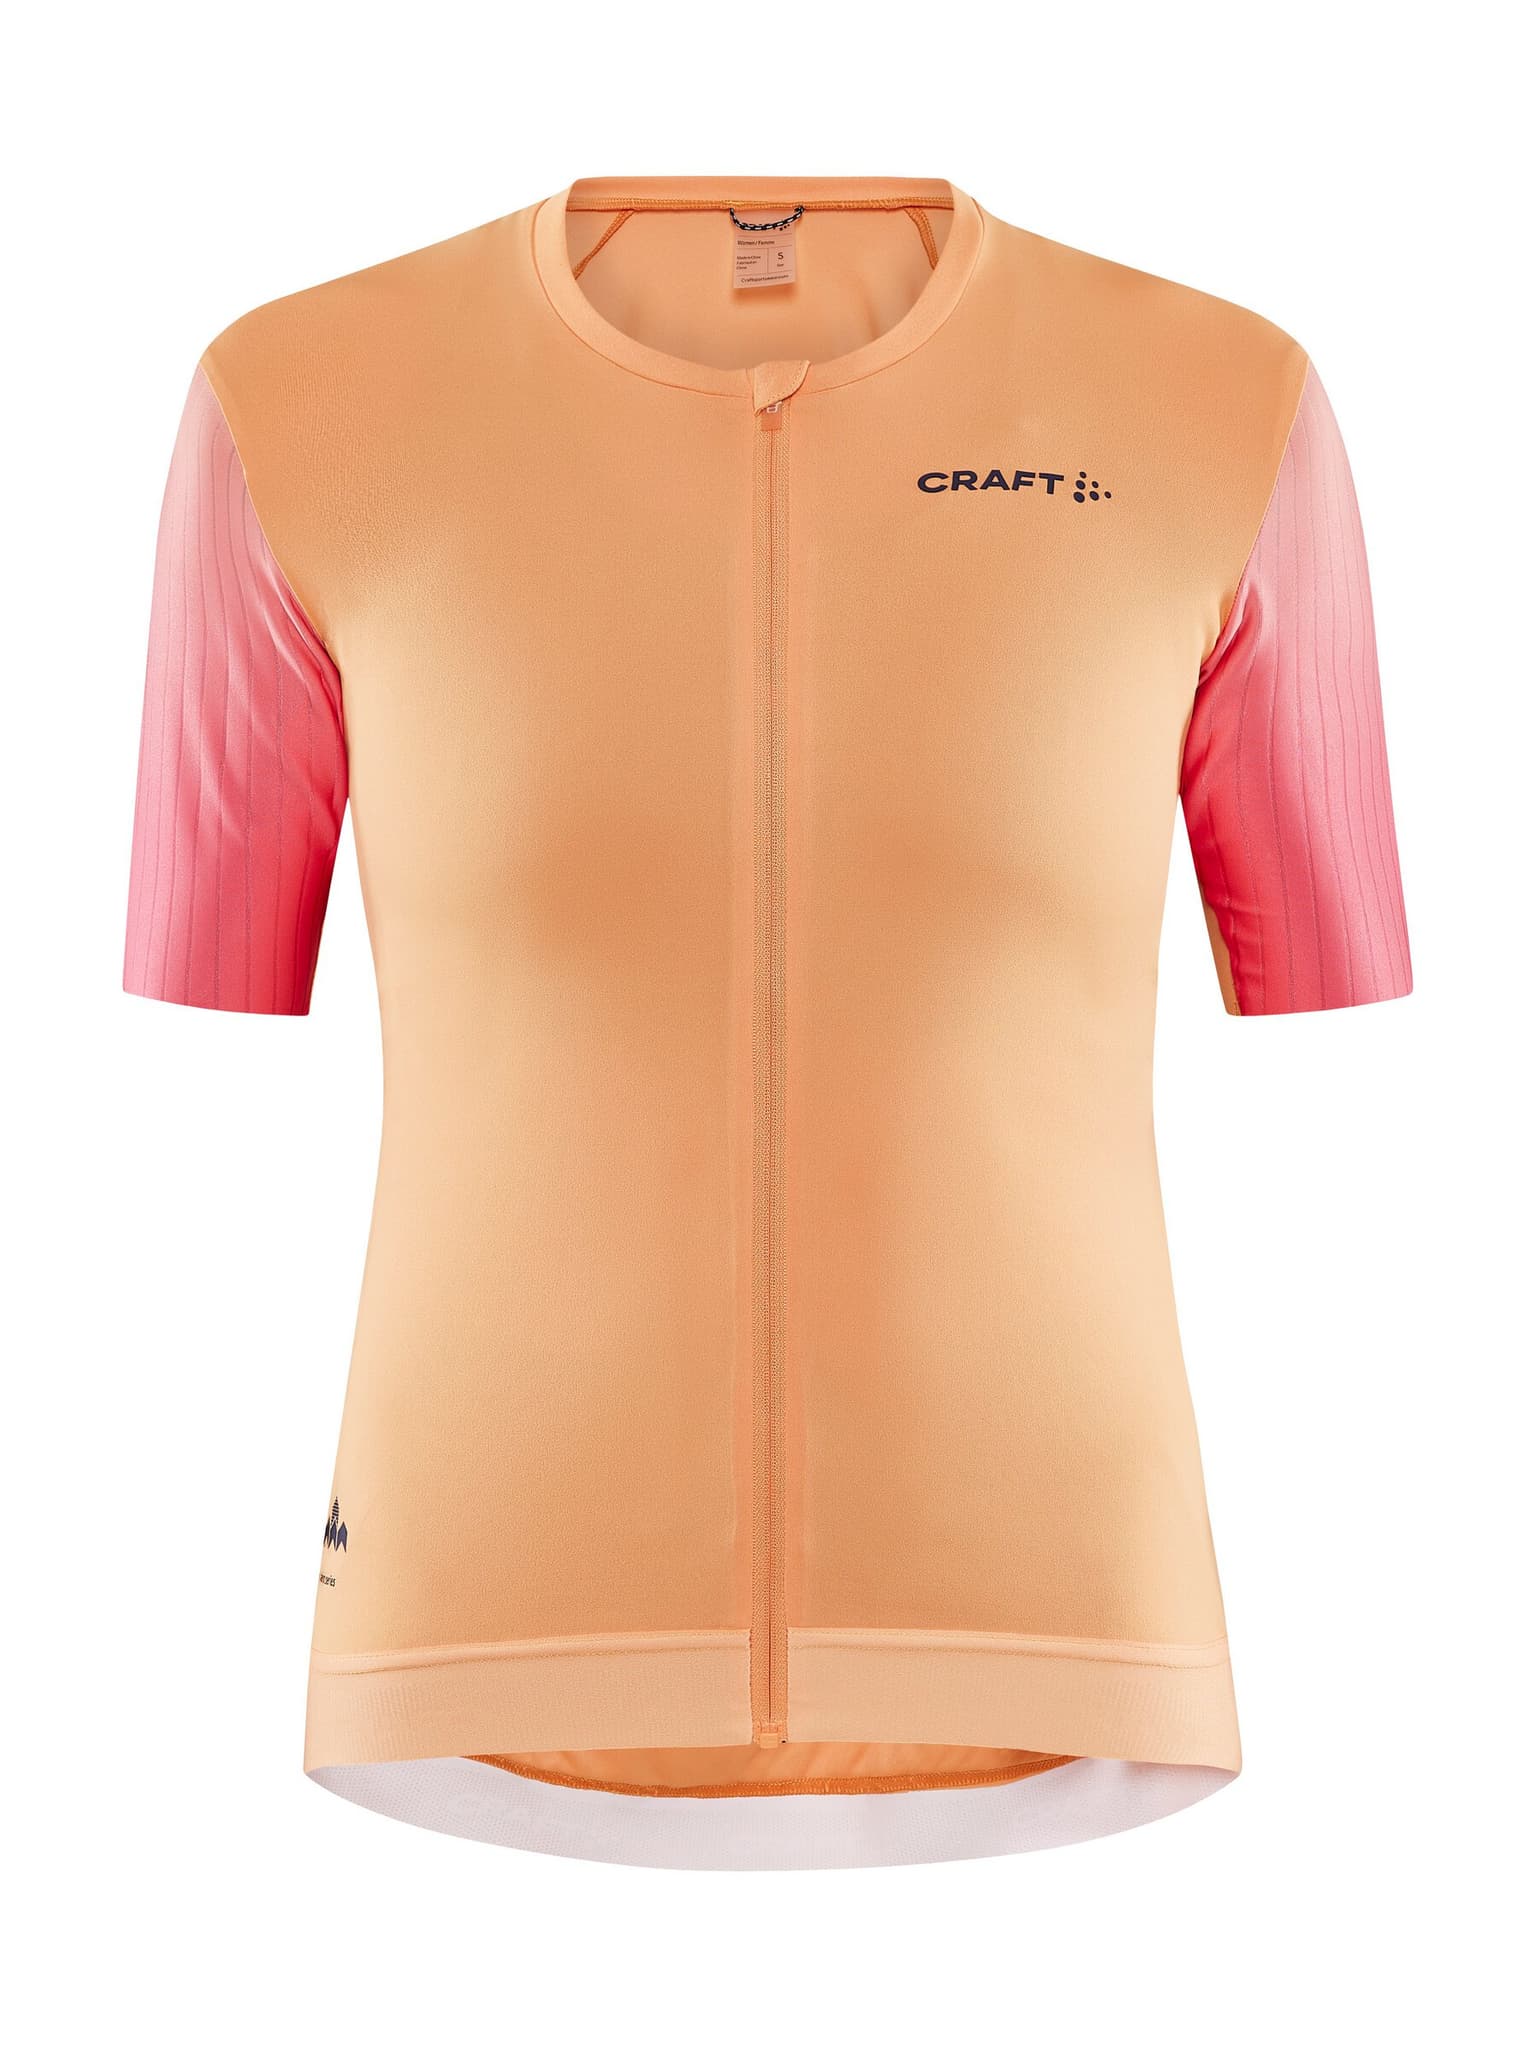 Craft Craft ADV AERO JERSEY Maglietta da bici arancio-chiaro 1